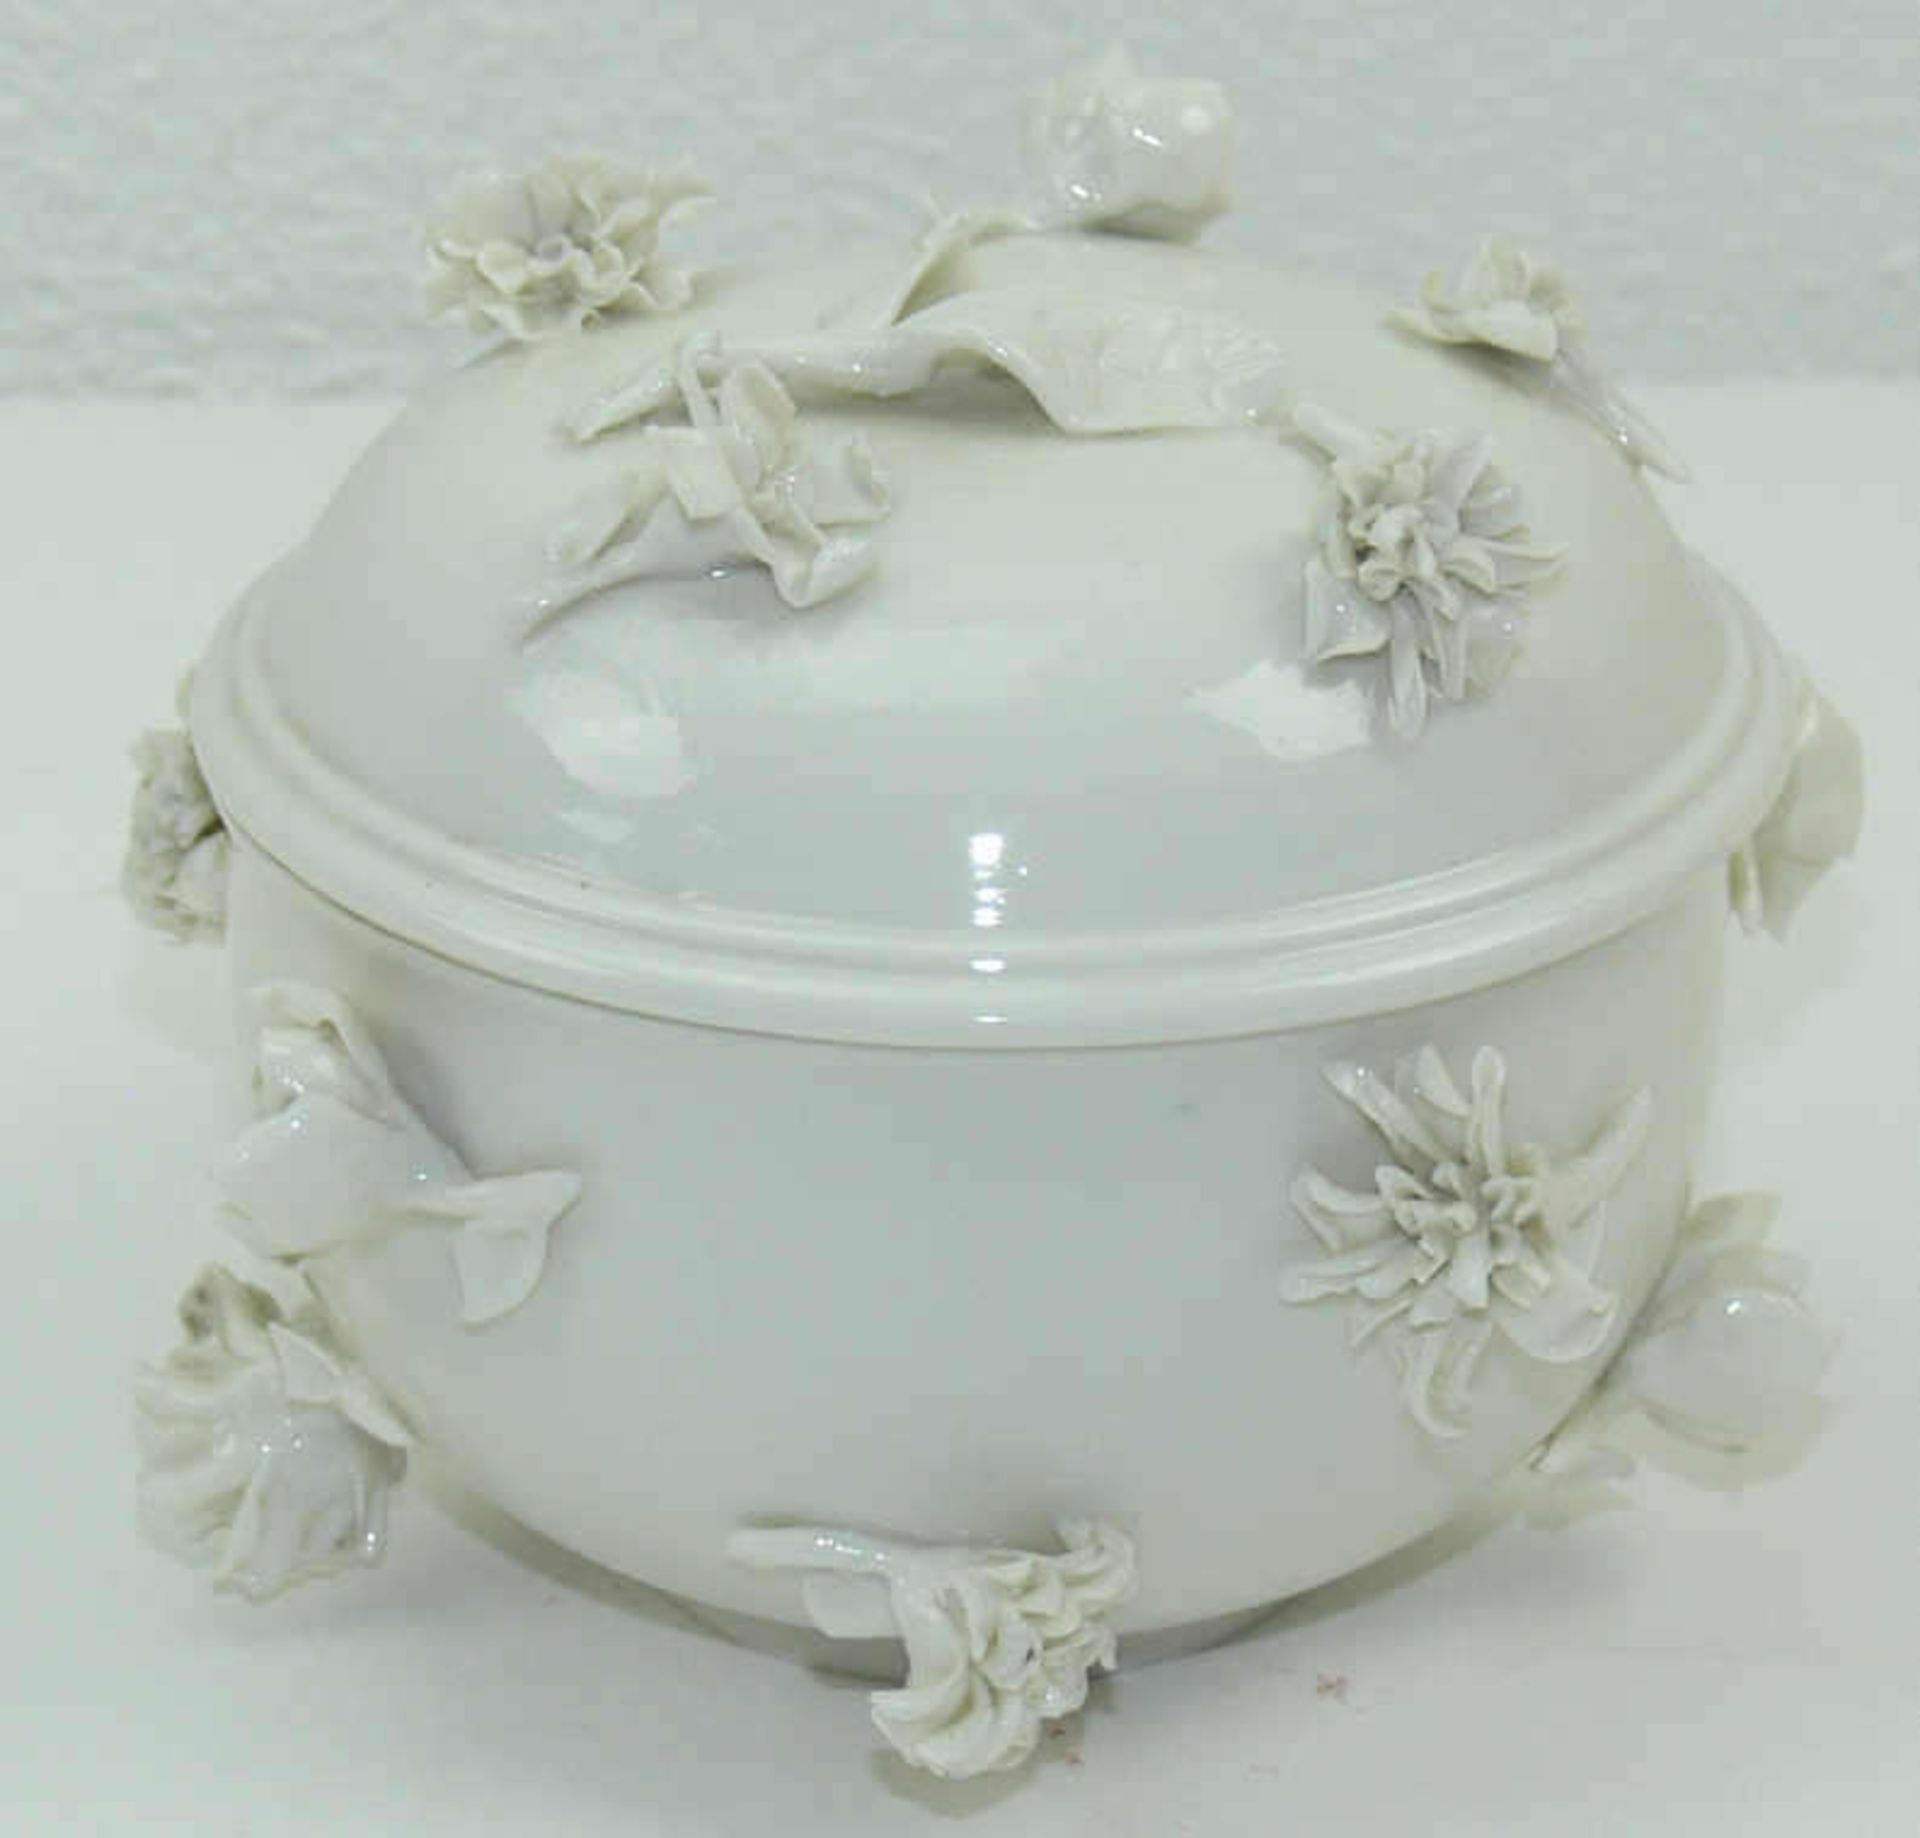 Nymphenburg - 1 Porzellandeckeldose weiß von Nymphenburg mit aufgesetzten Blüten, 1 feiner